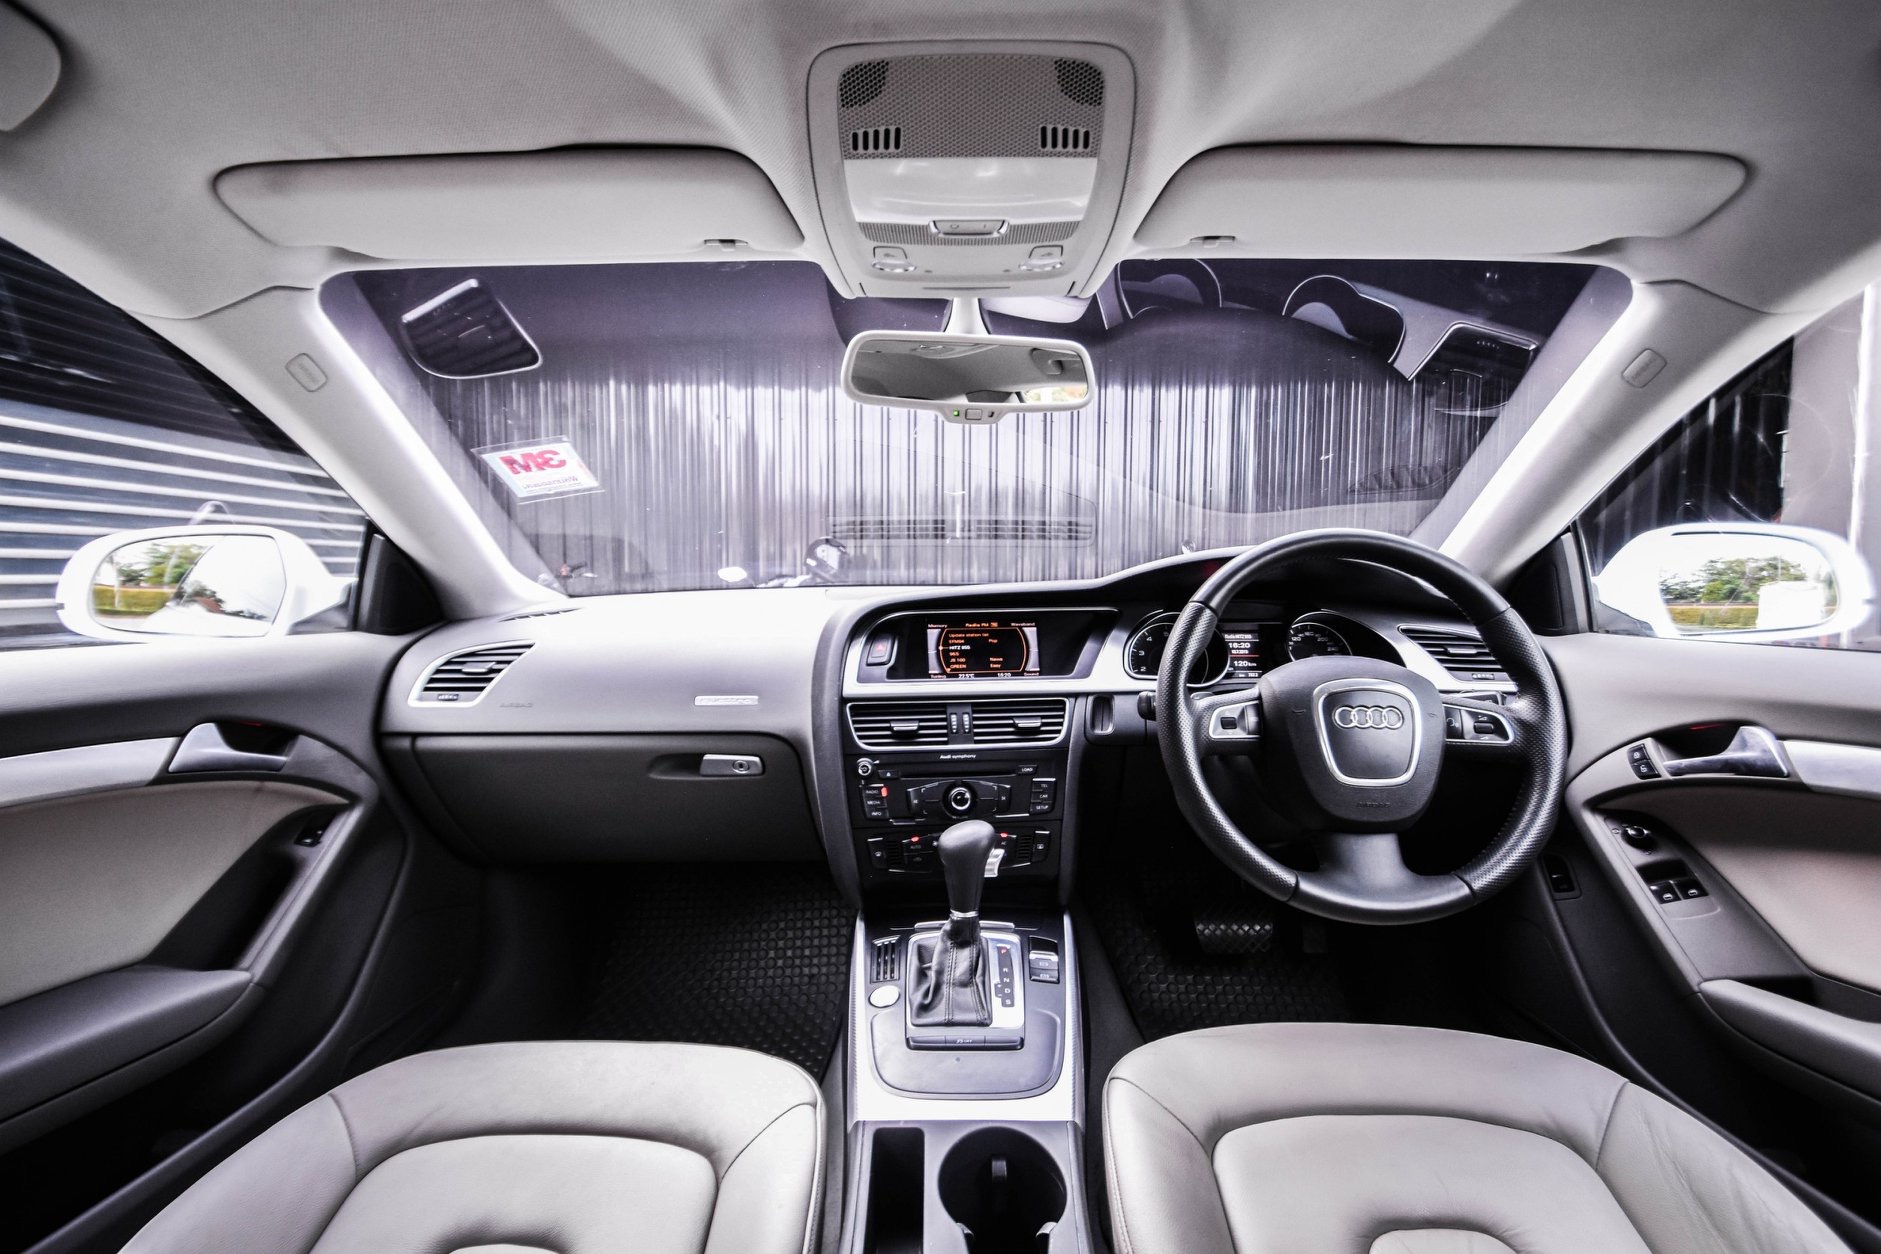 Audi A5 ปี 2011 สีขาว